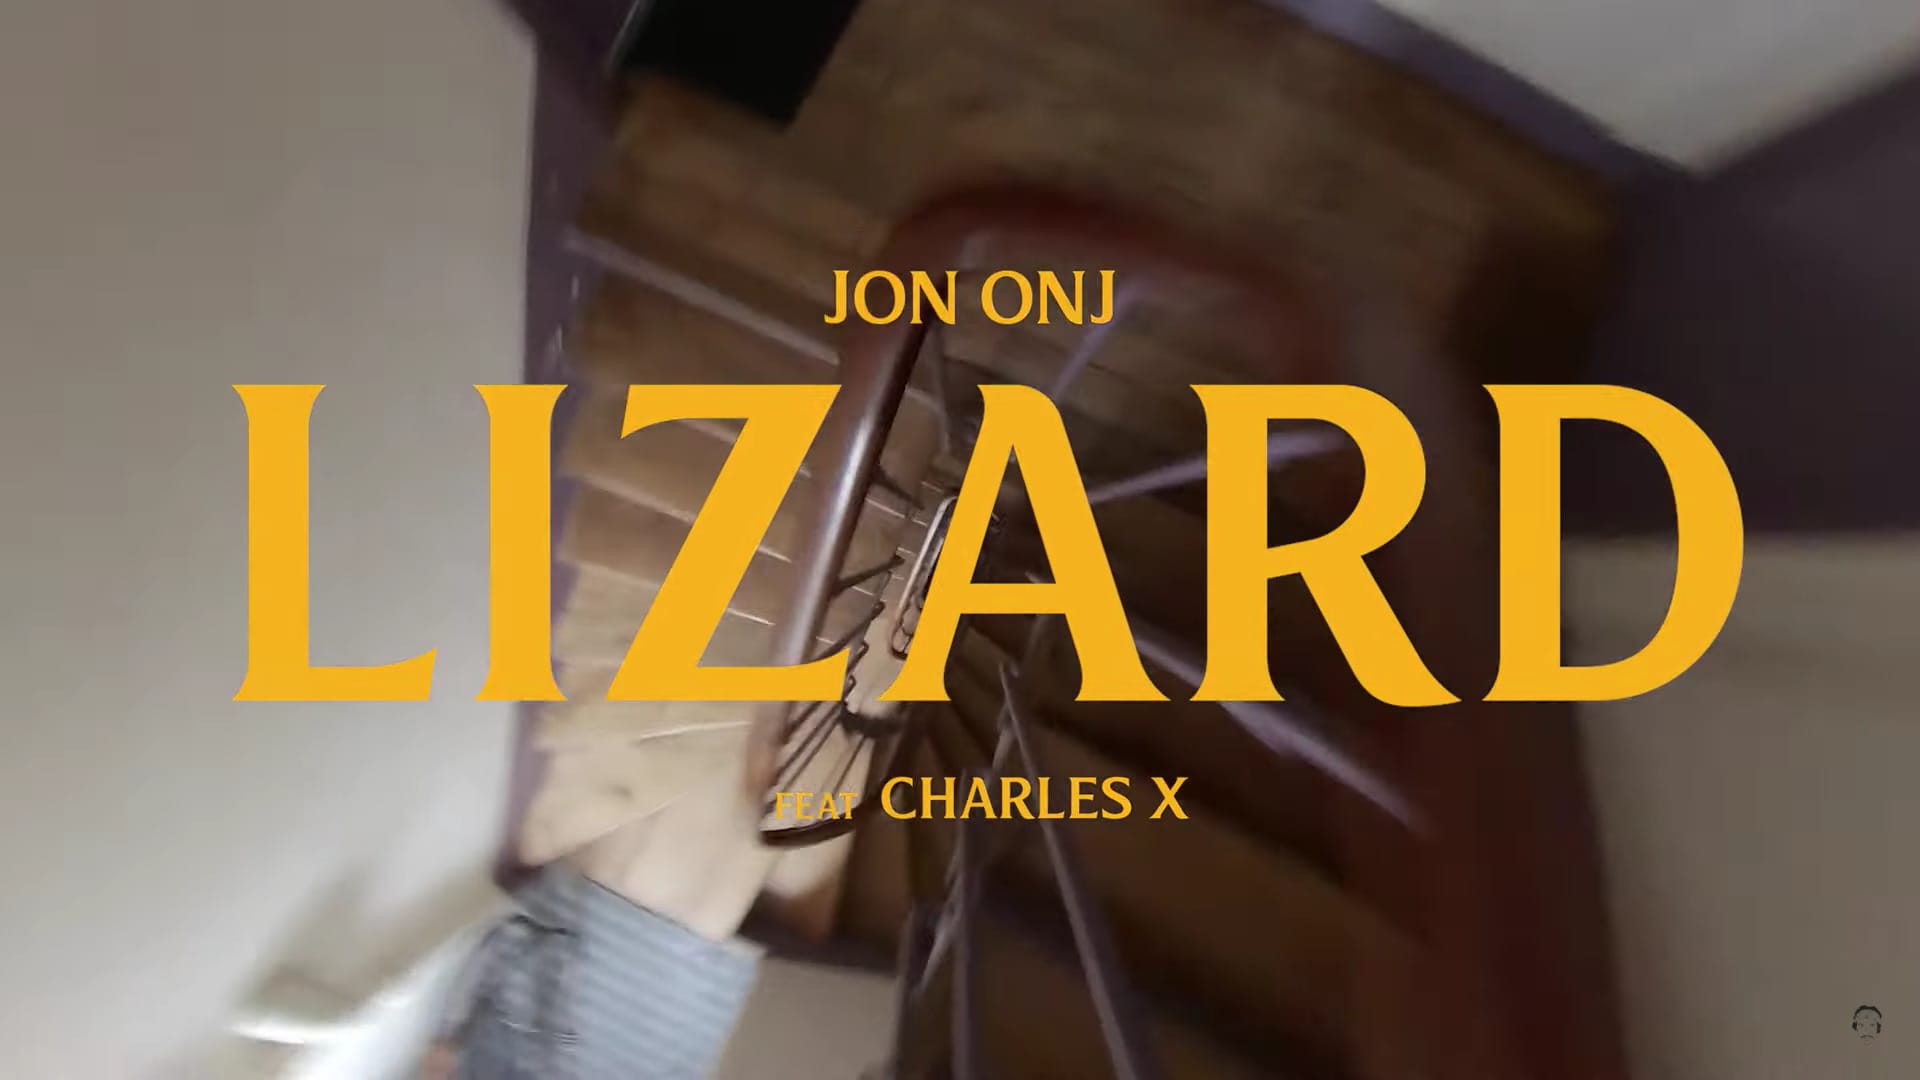 Screen du clip Lizard, titre et escaliers qui tourbillonnent